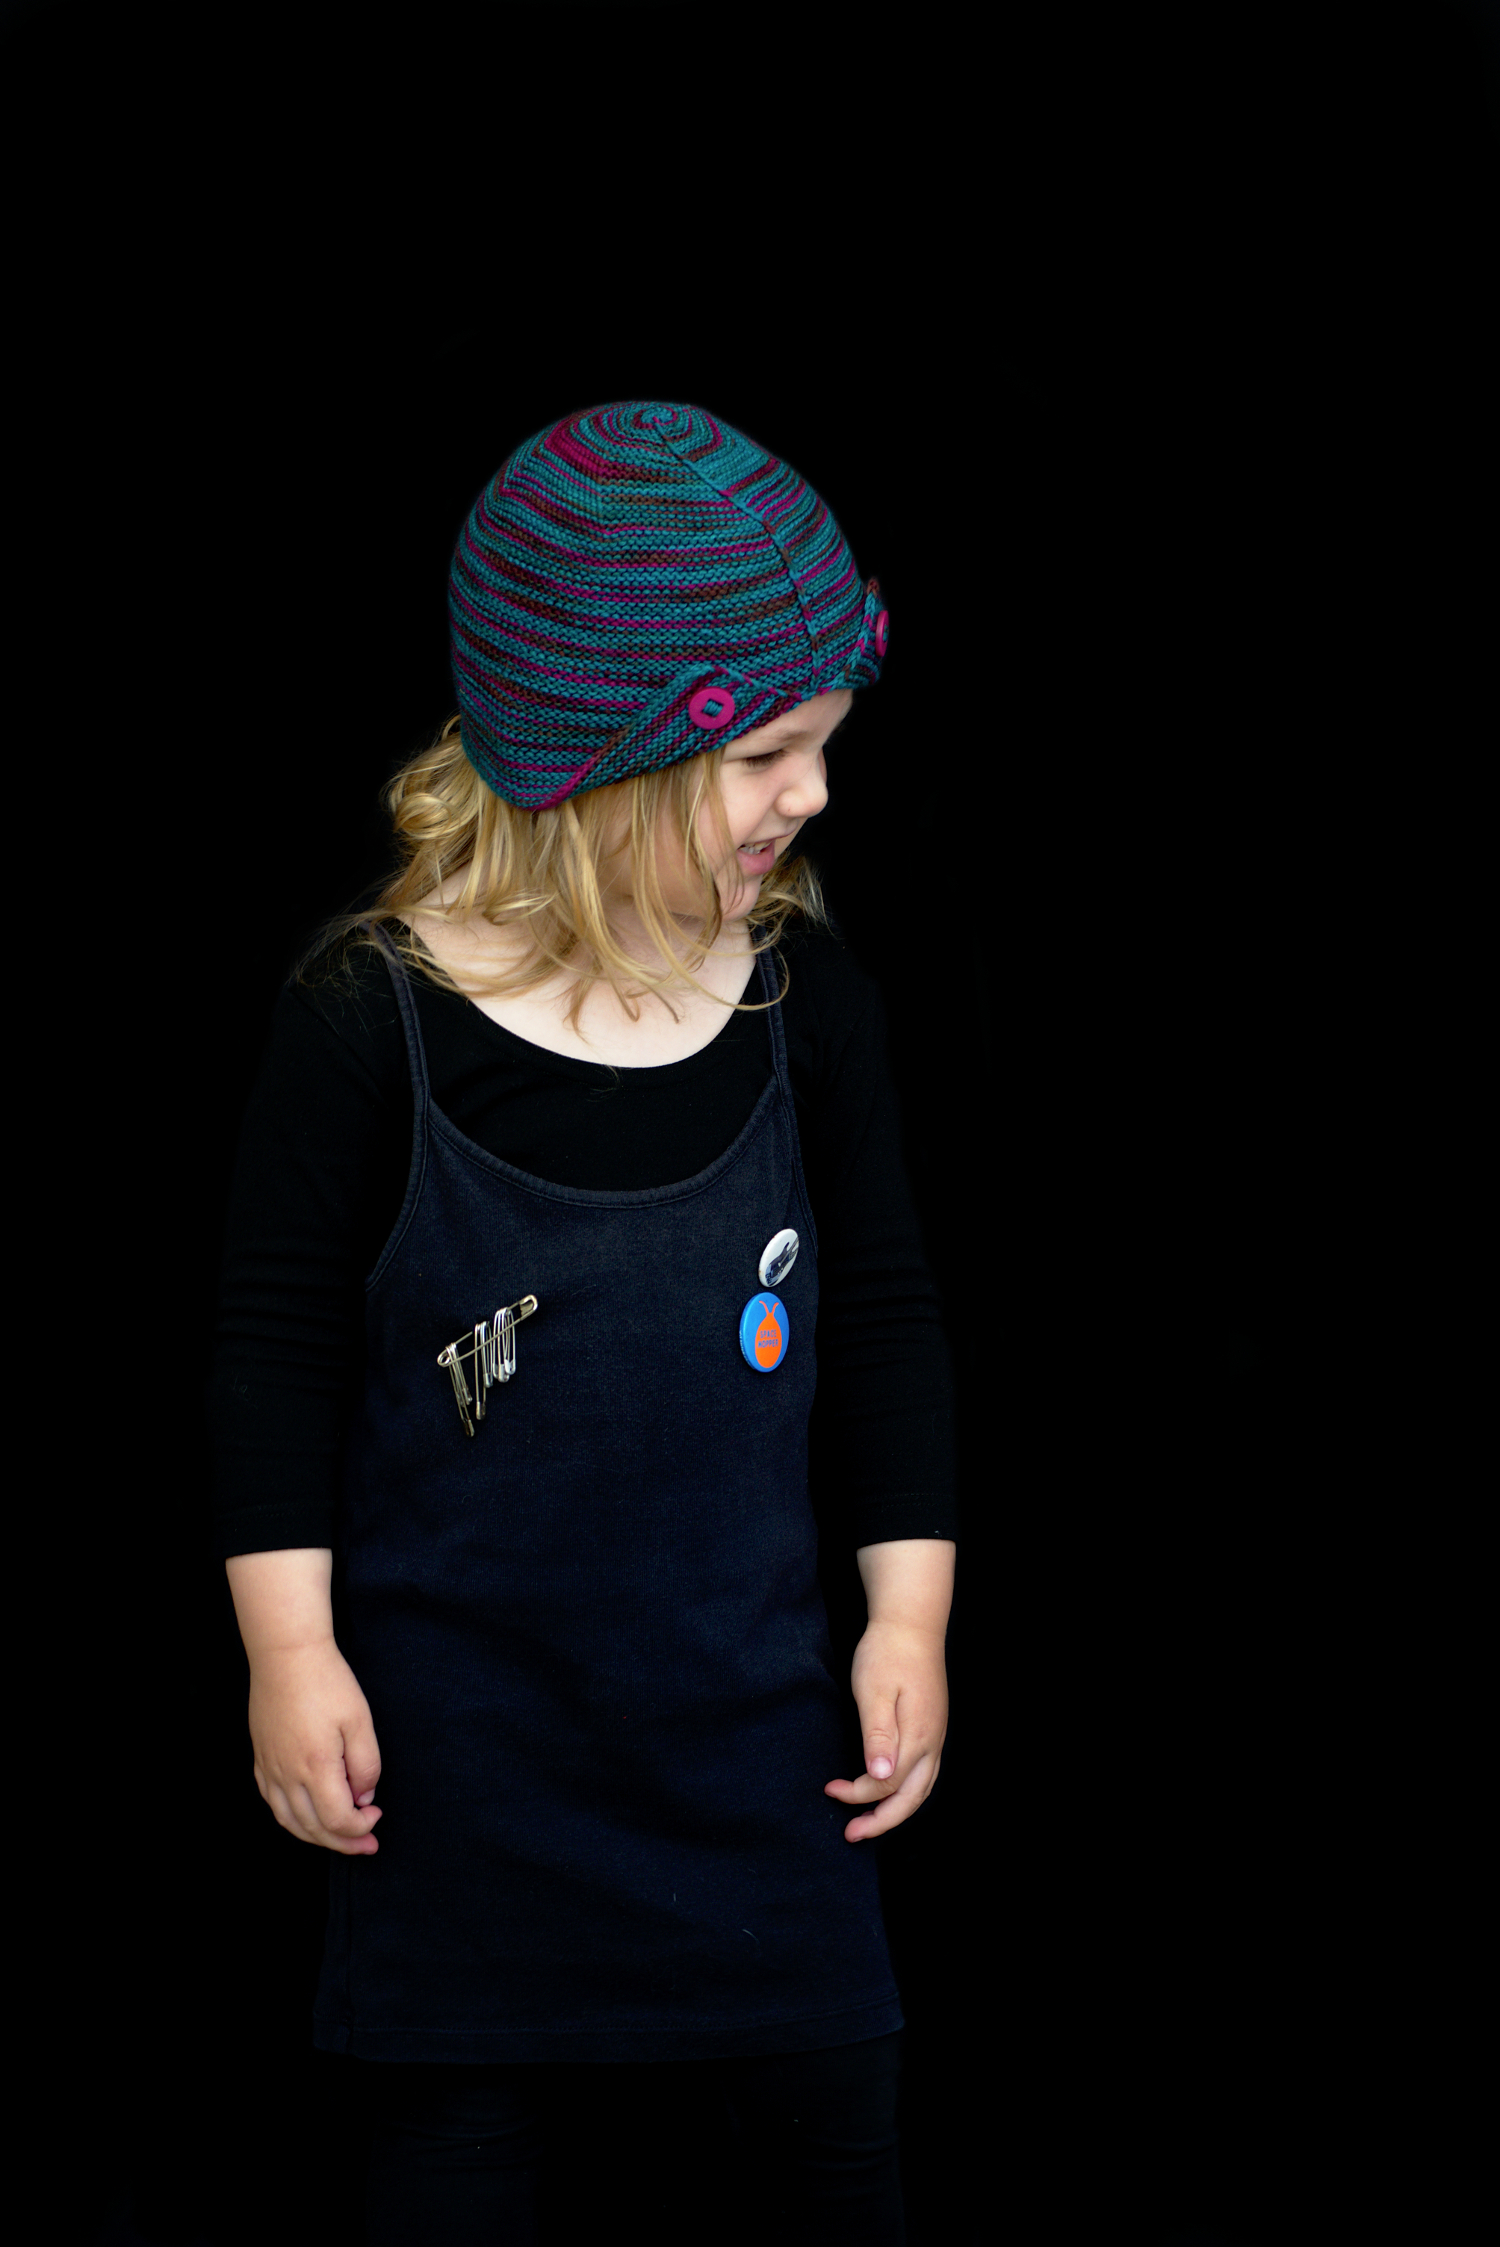 Wychavon cloche Hat knitting pattern